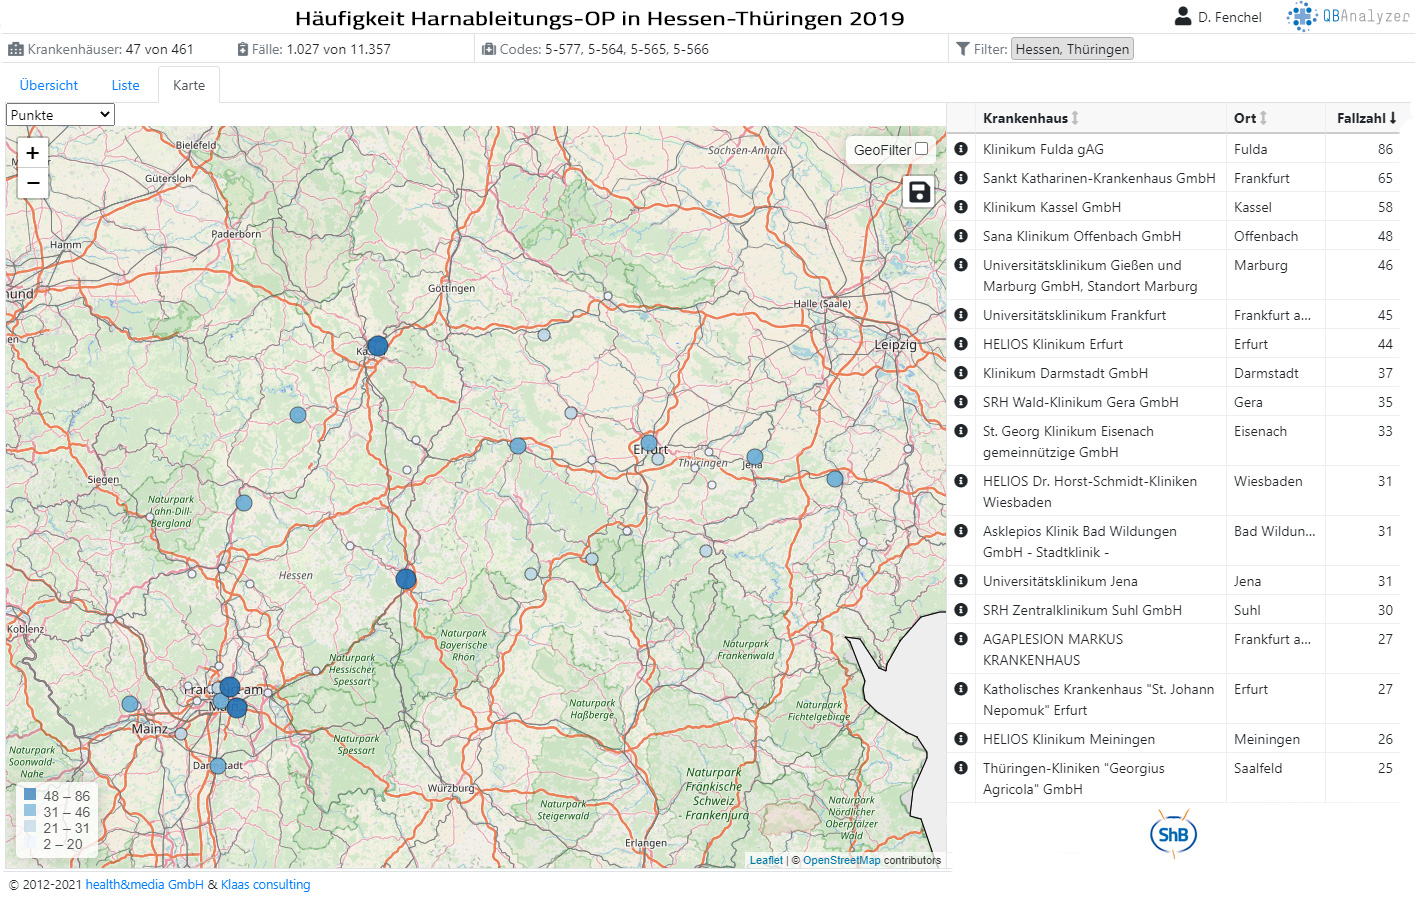 Kliniken die 2019 in Hessen-Thüringen diese 4 Harnableitungen operiert haben